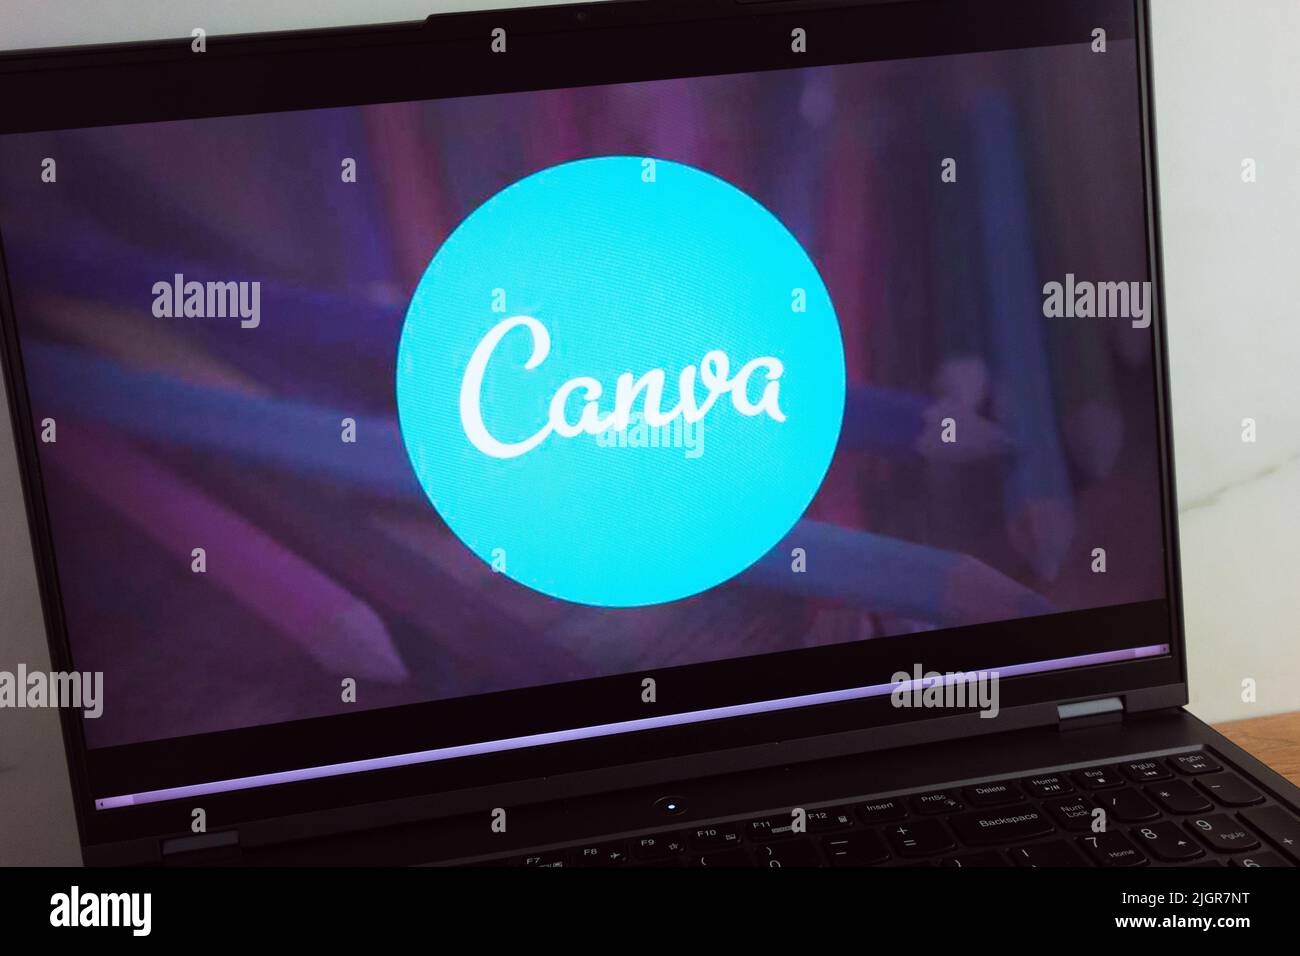 KONSKIE, POLONIA - 11 luglio 2022: Visualizzazione del logo della piattaforma grafica Canva sullo schermo del computer portatile Foto Stock